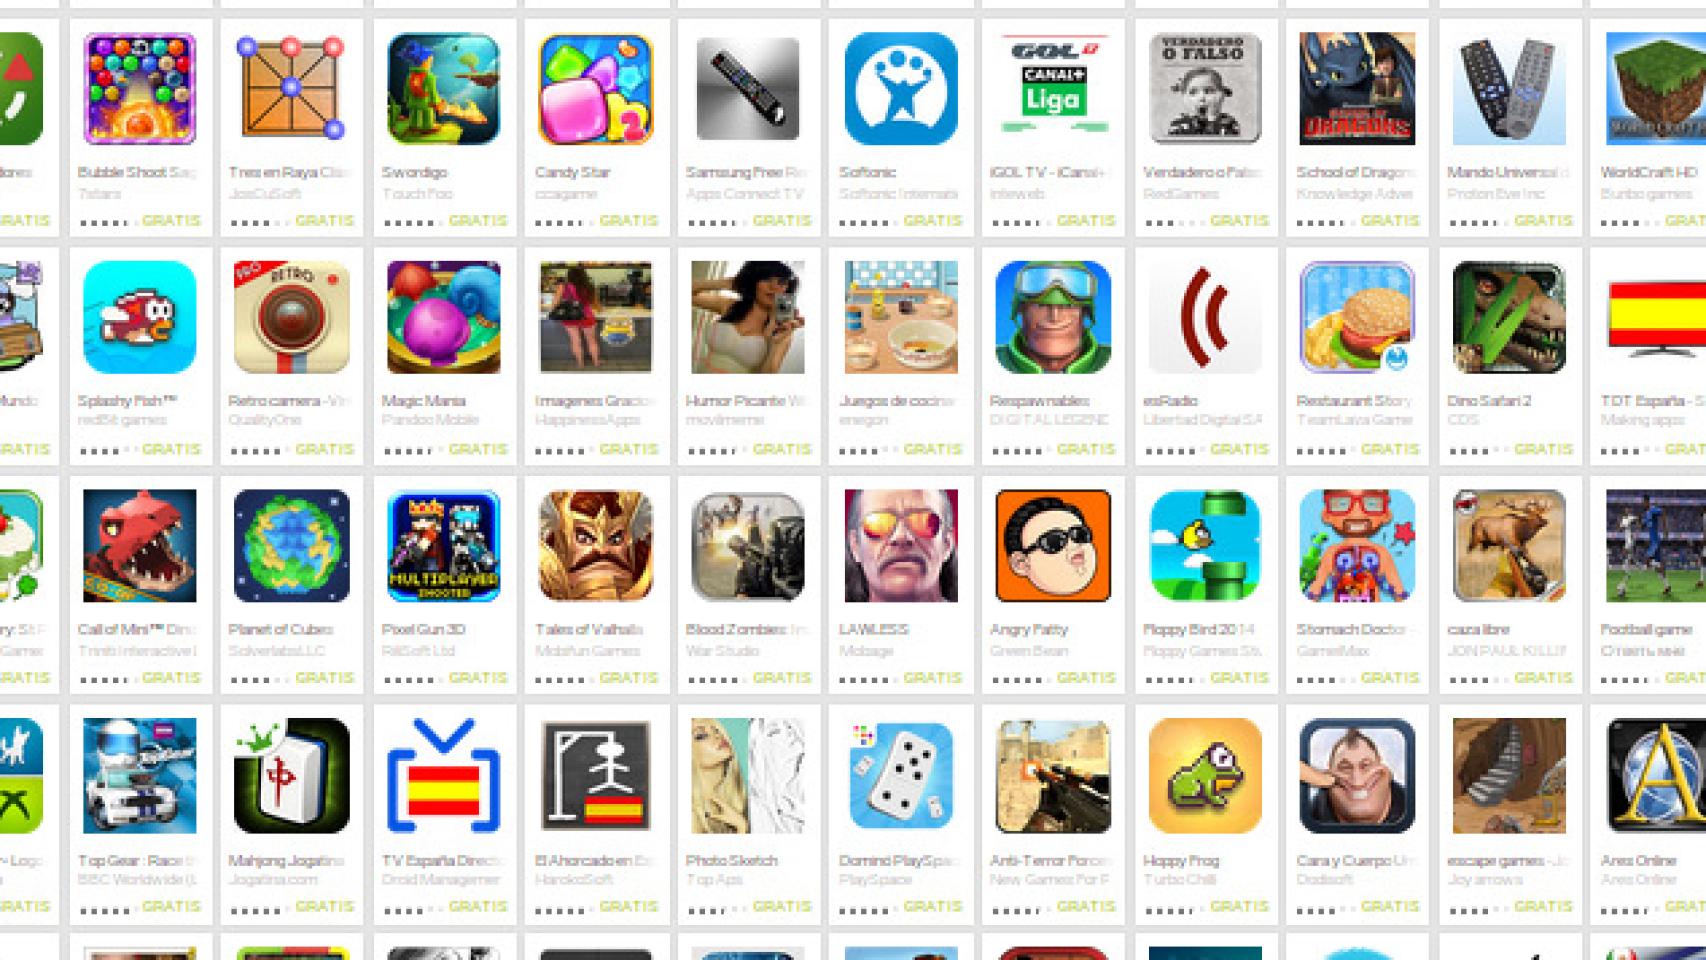 Los juegos de Google Play no requerirán una cuenta de Google Plus